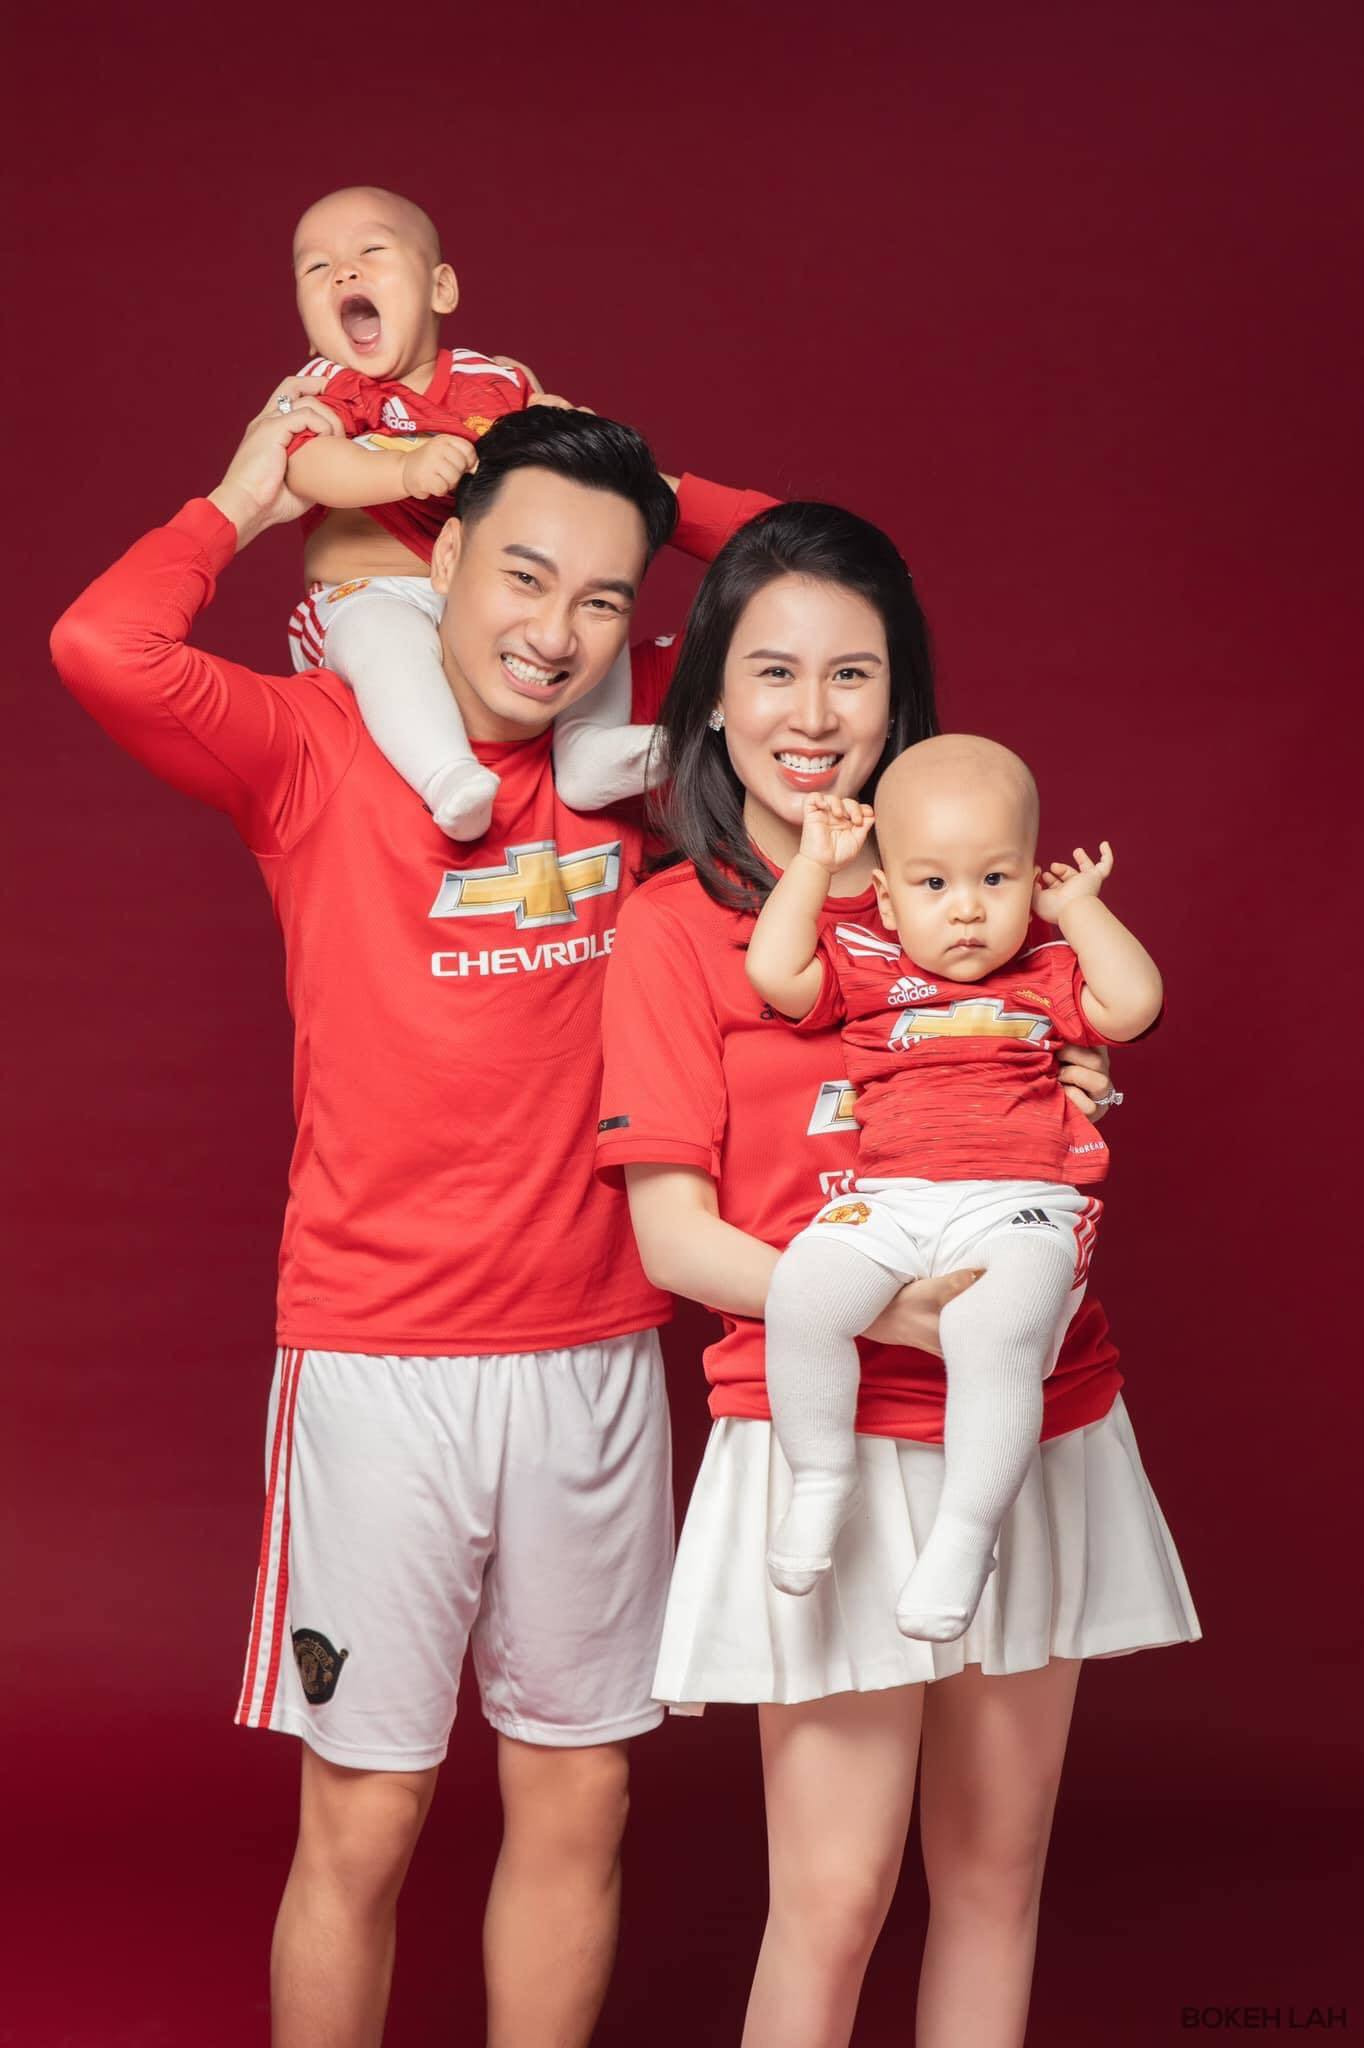 Gia đình MC Thành Trung làm luôn bộ ảnh đỏ rực kỷ niệm đội bóng MU “lên đỉnh”